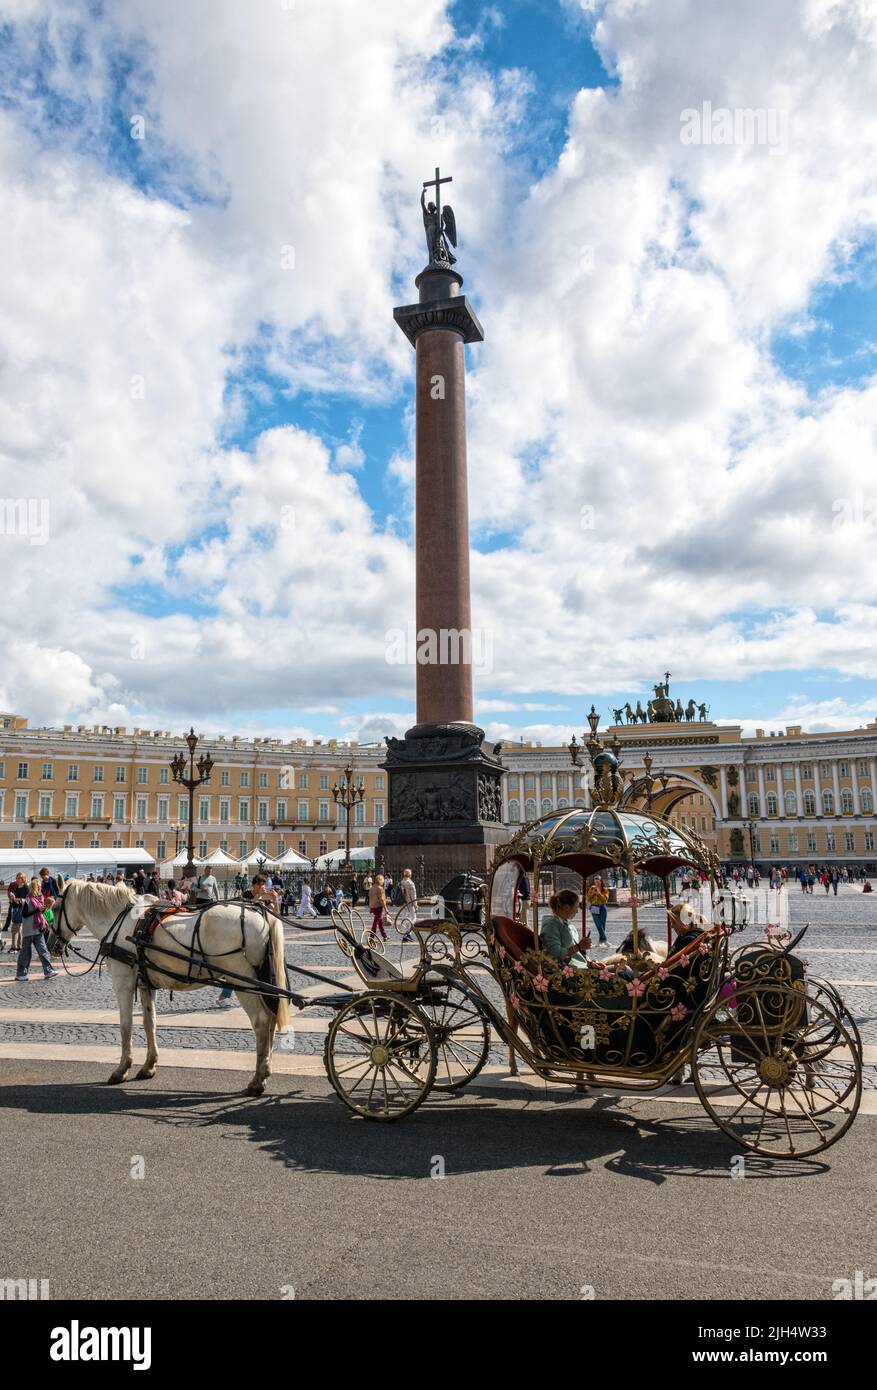 Une calèche richement ornée avec des touristes sur la place du Palais (Dvortsovaya Ploshchad), Saint-Pétersbourg, Russie Banque D'Images